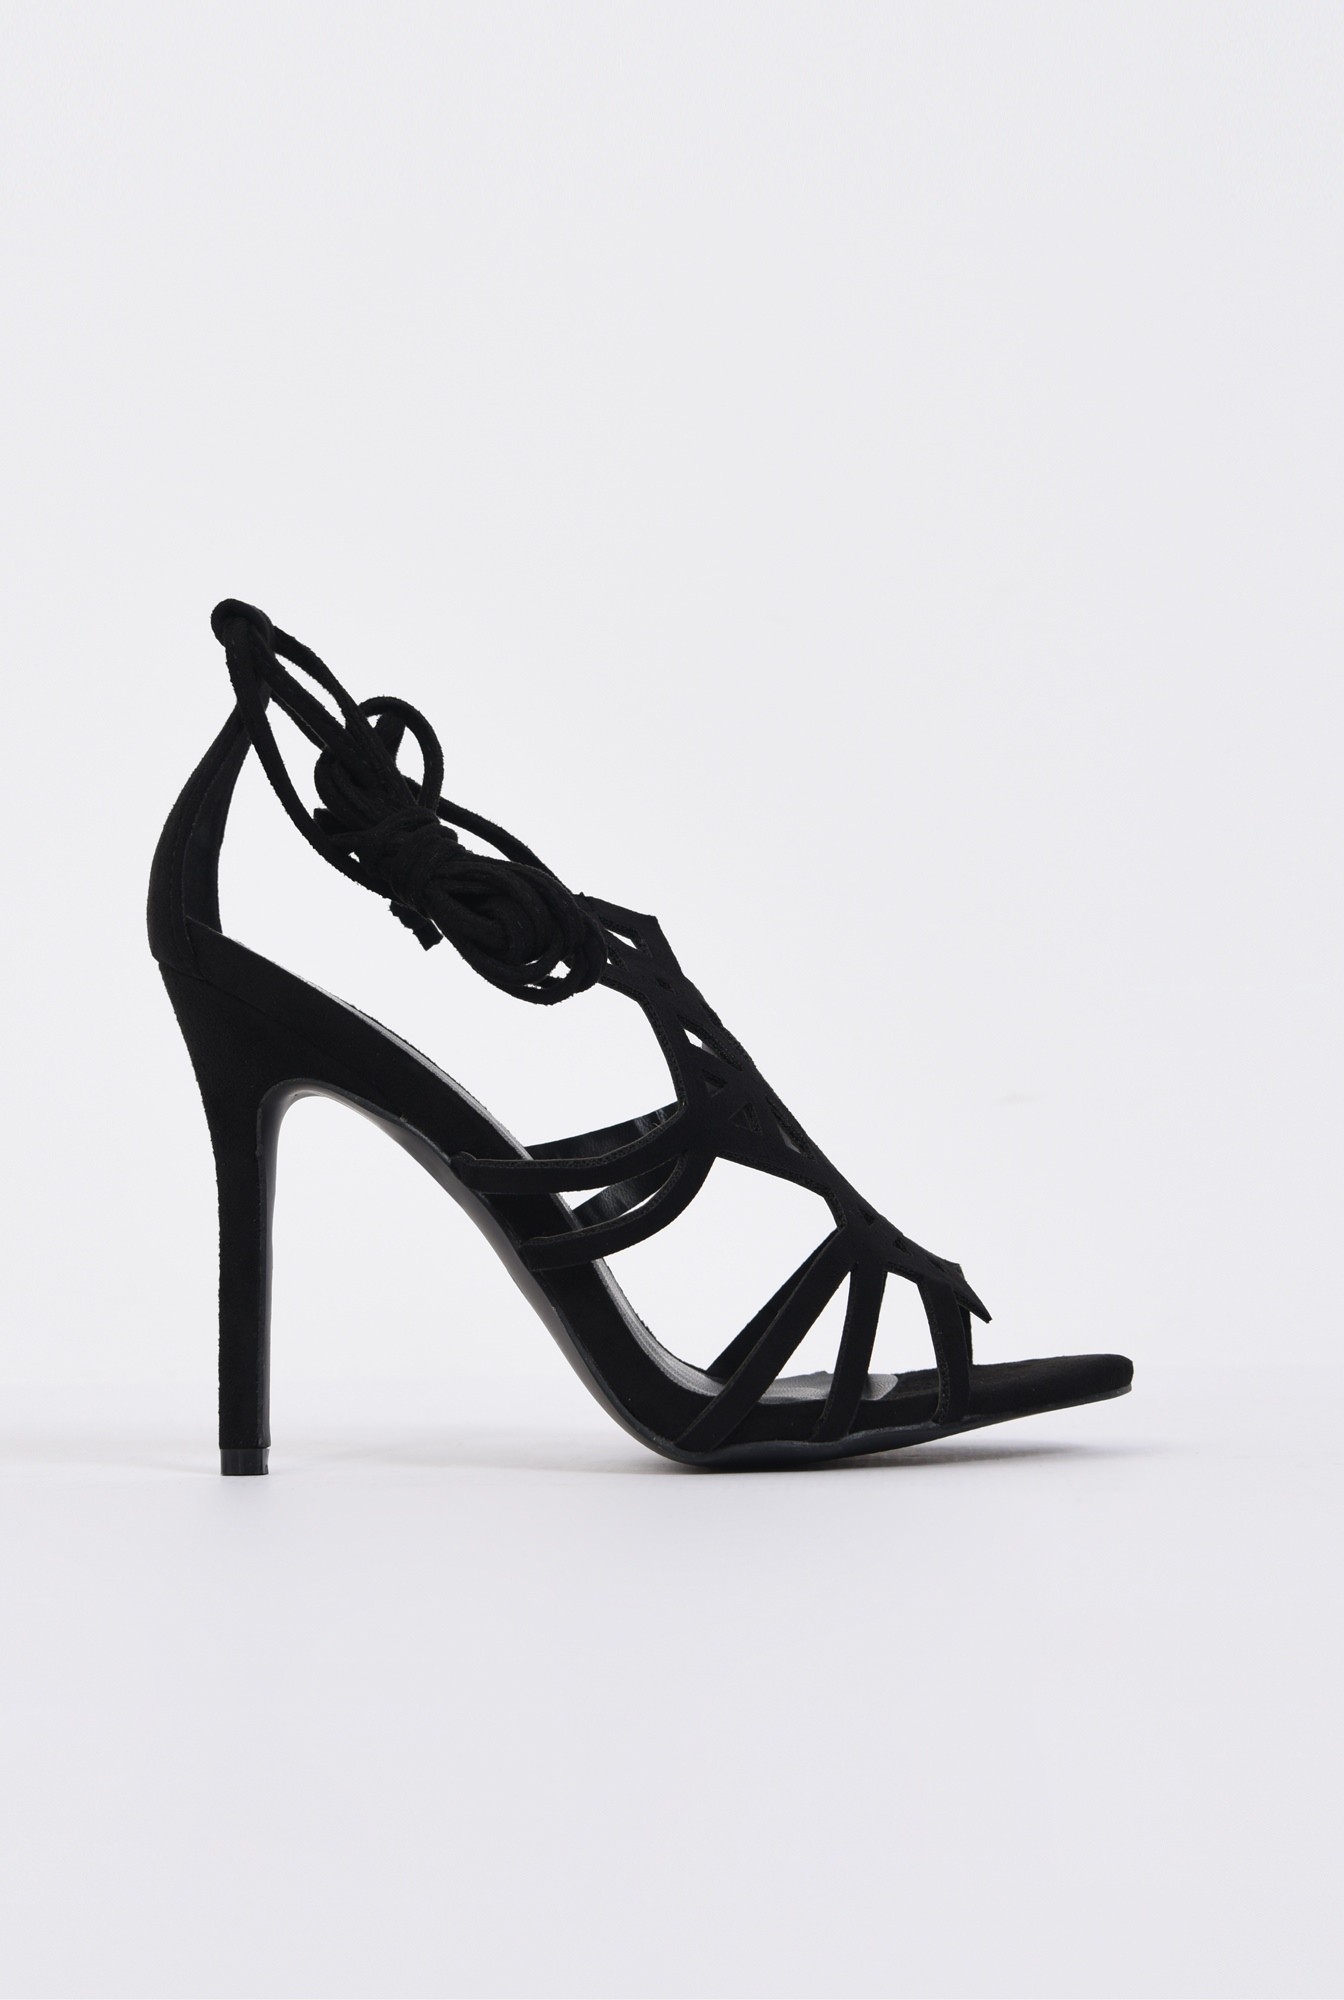 0 - sandale elegante, negru, stiletto